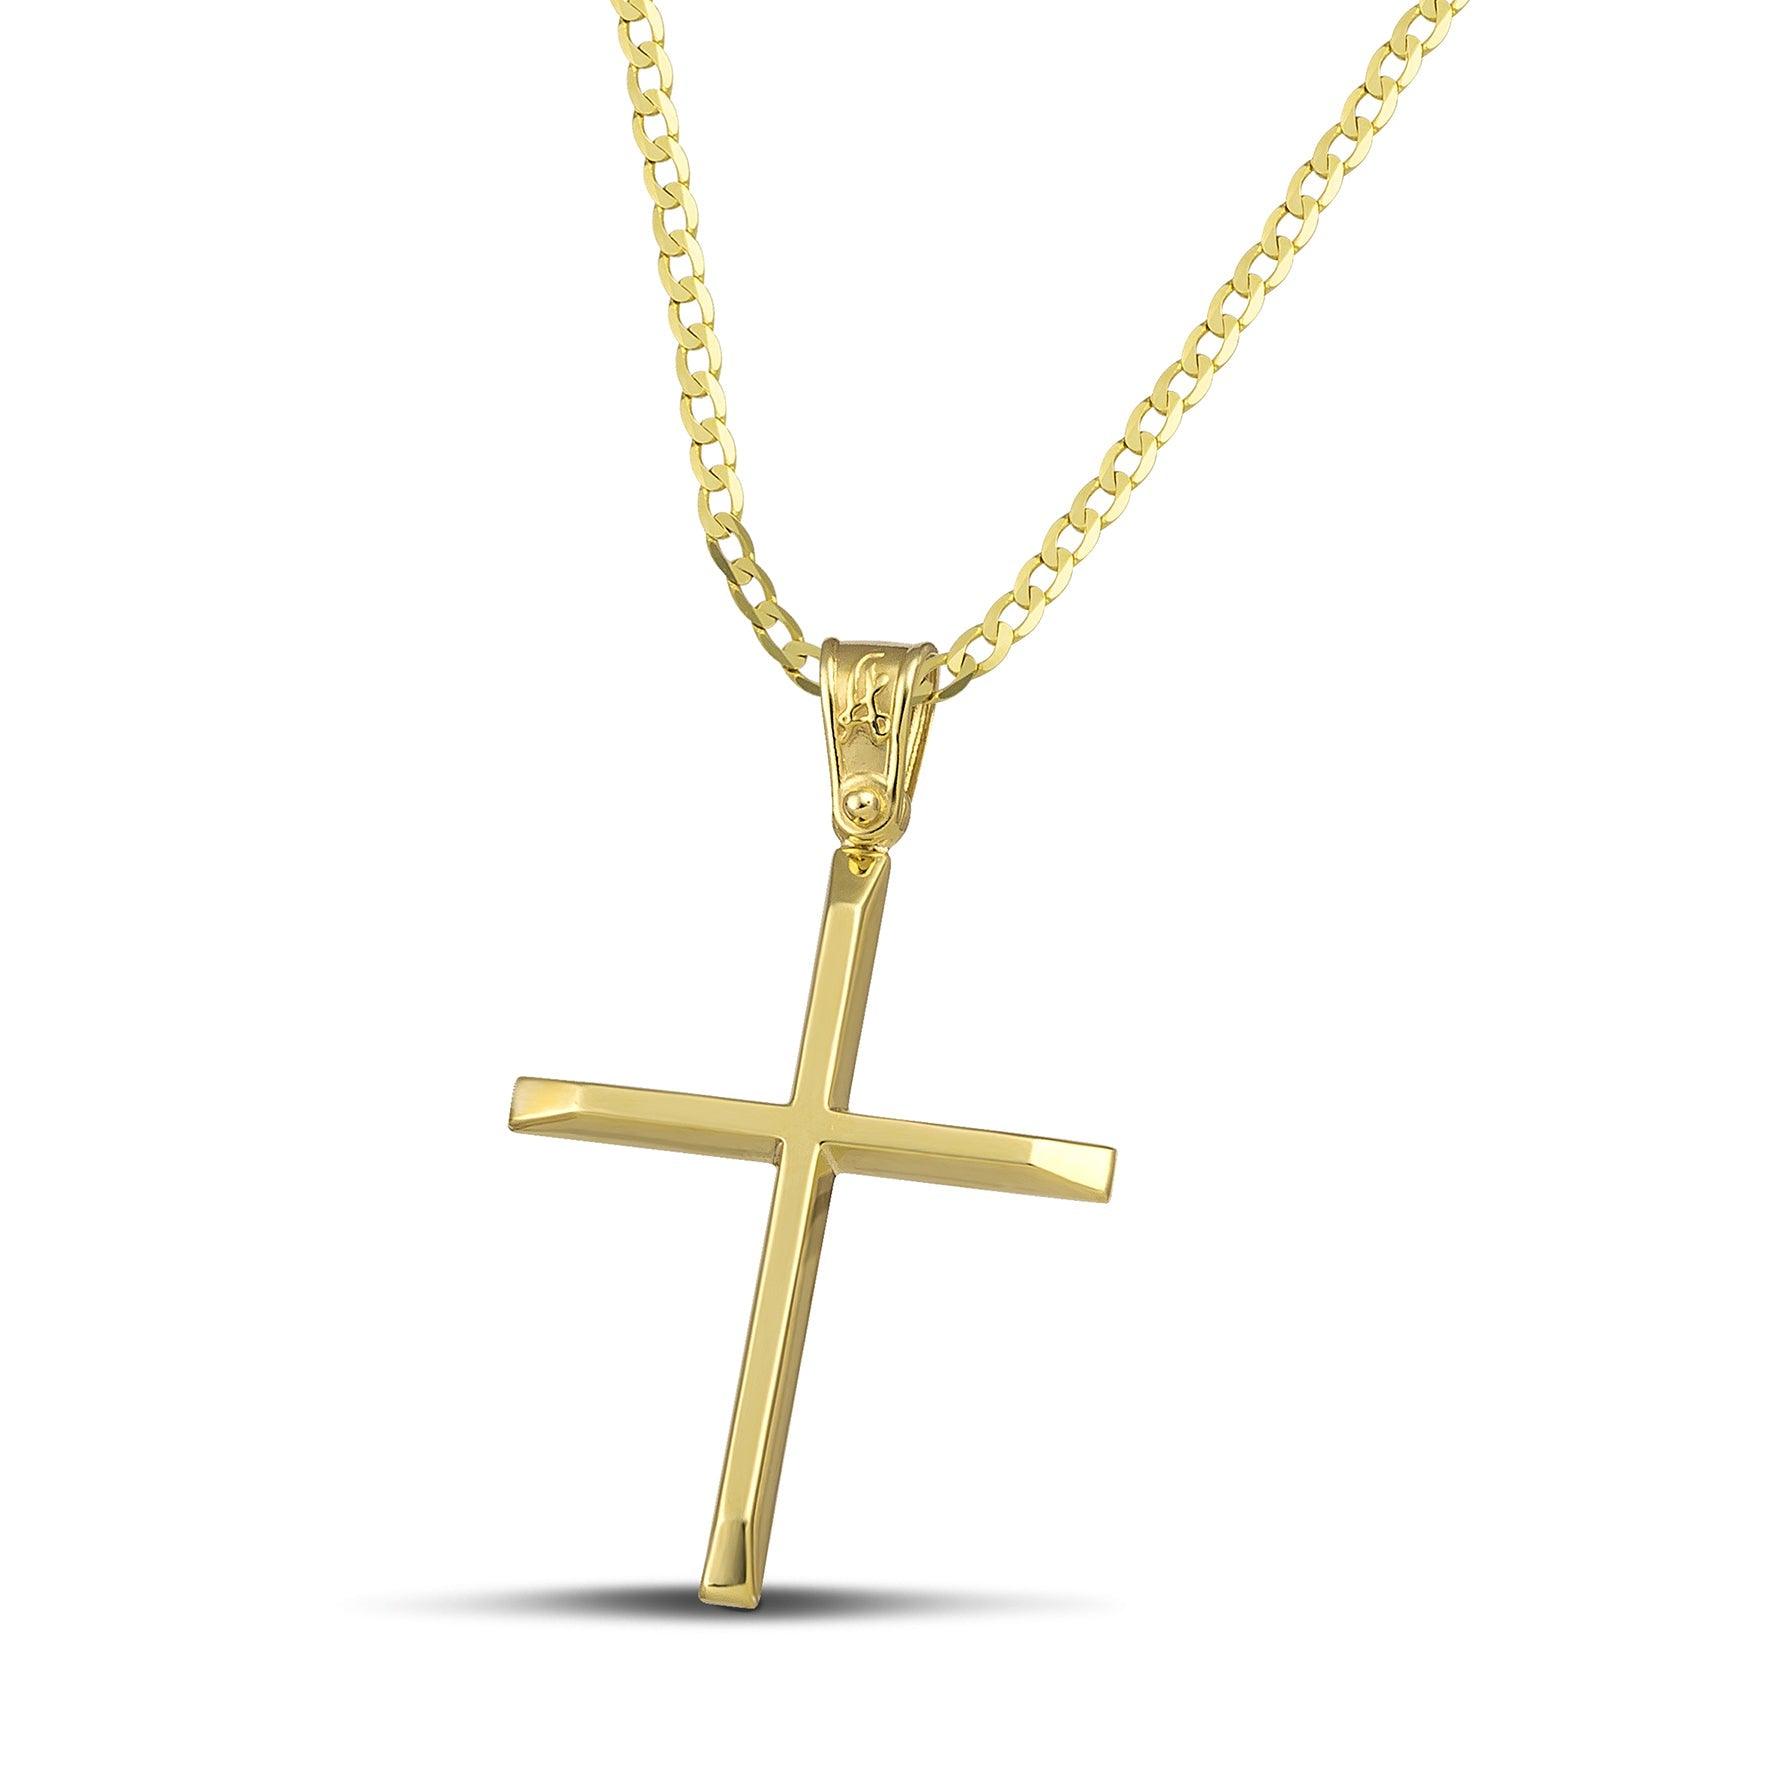 Χρυσός βαφτιστικός σταυρός Κ14 για γυναίκα. Χειροποίητο κόσμημα με ελαφριά κατασκευή, περασμένο σε κλασσική αλυσίδα.